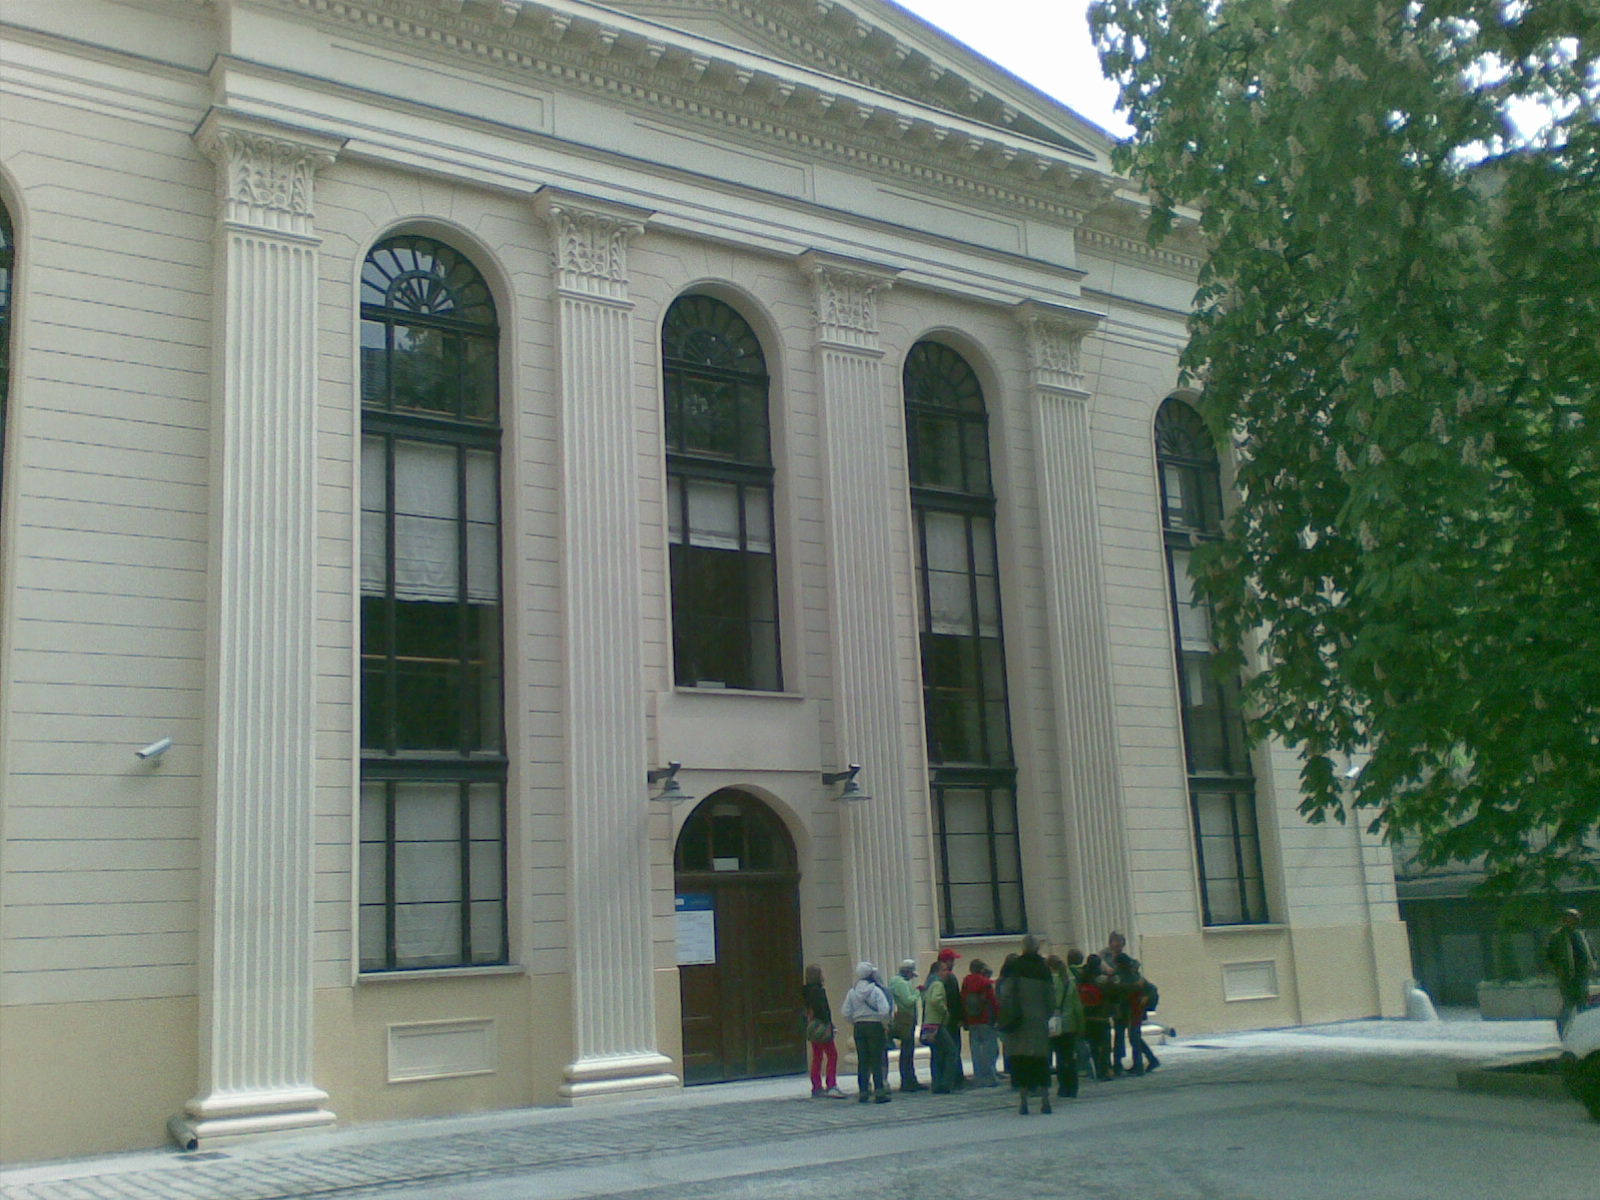 Wielkie otwarcie Synagogi pod Białym Bocianem (Zobacz i posłuchaj) - Synagoga pod Białym Bocianem, fot. Dariusz Wieczorkowski